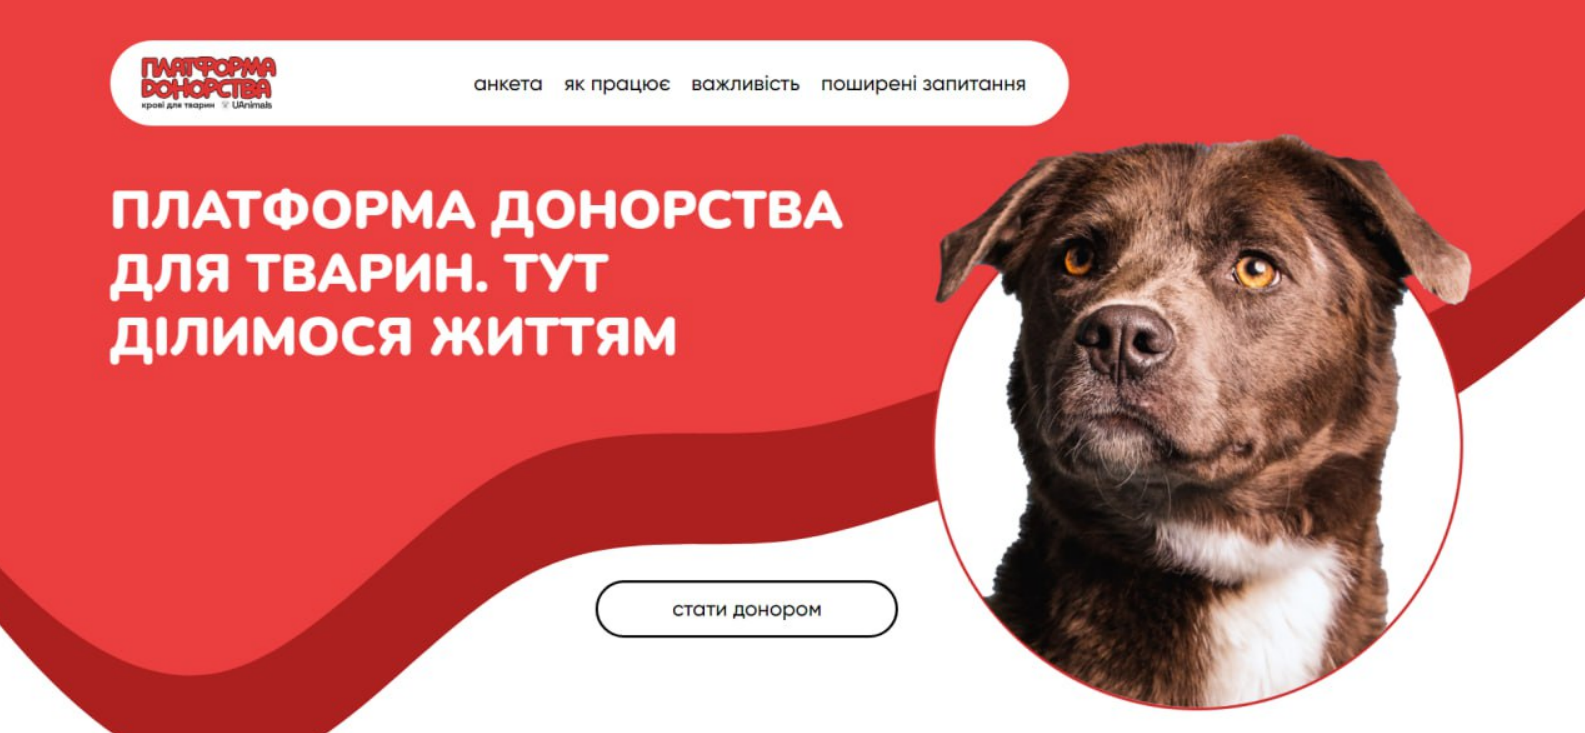 В України запустили платформу донорства крові для тварин: подробиці